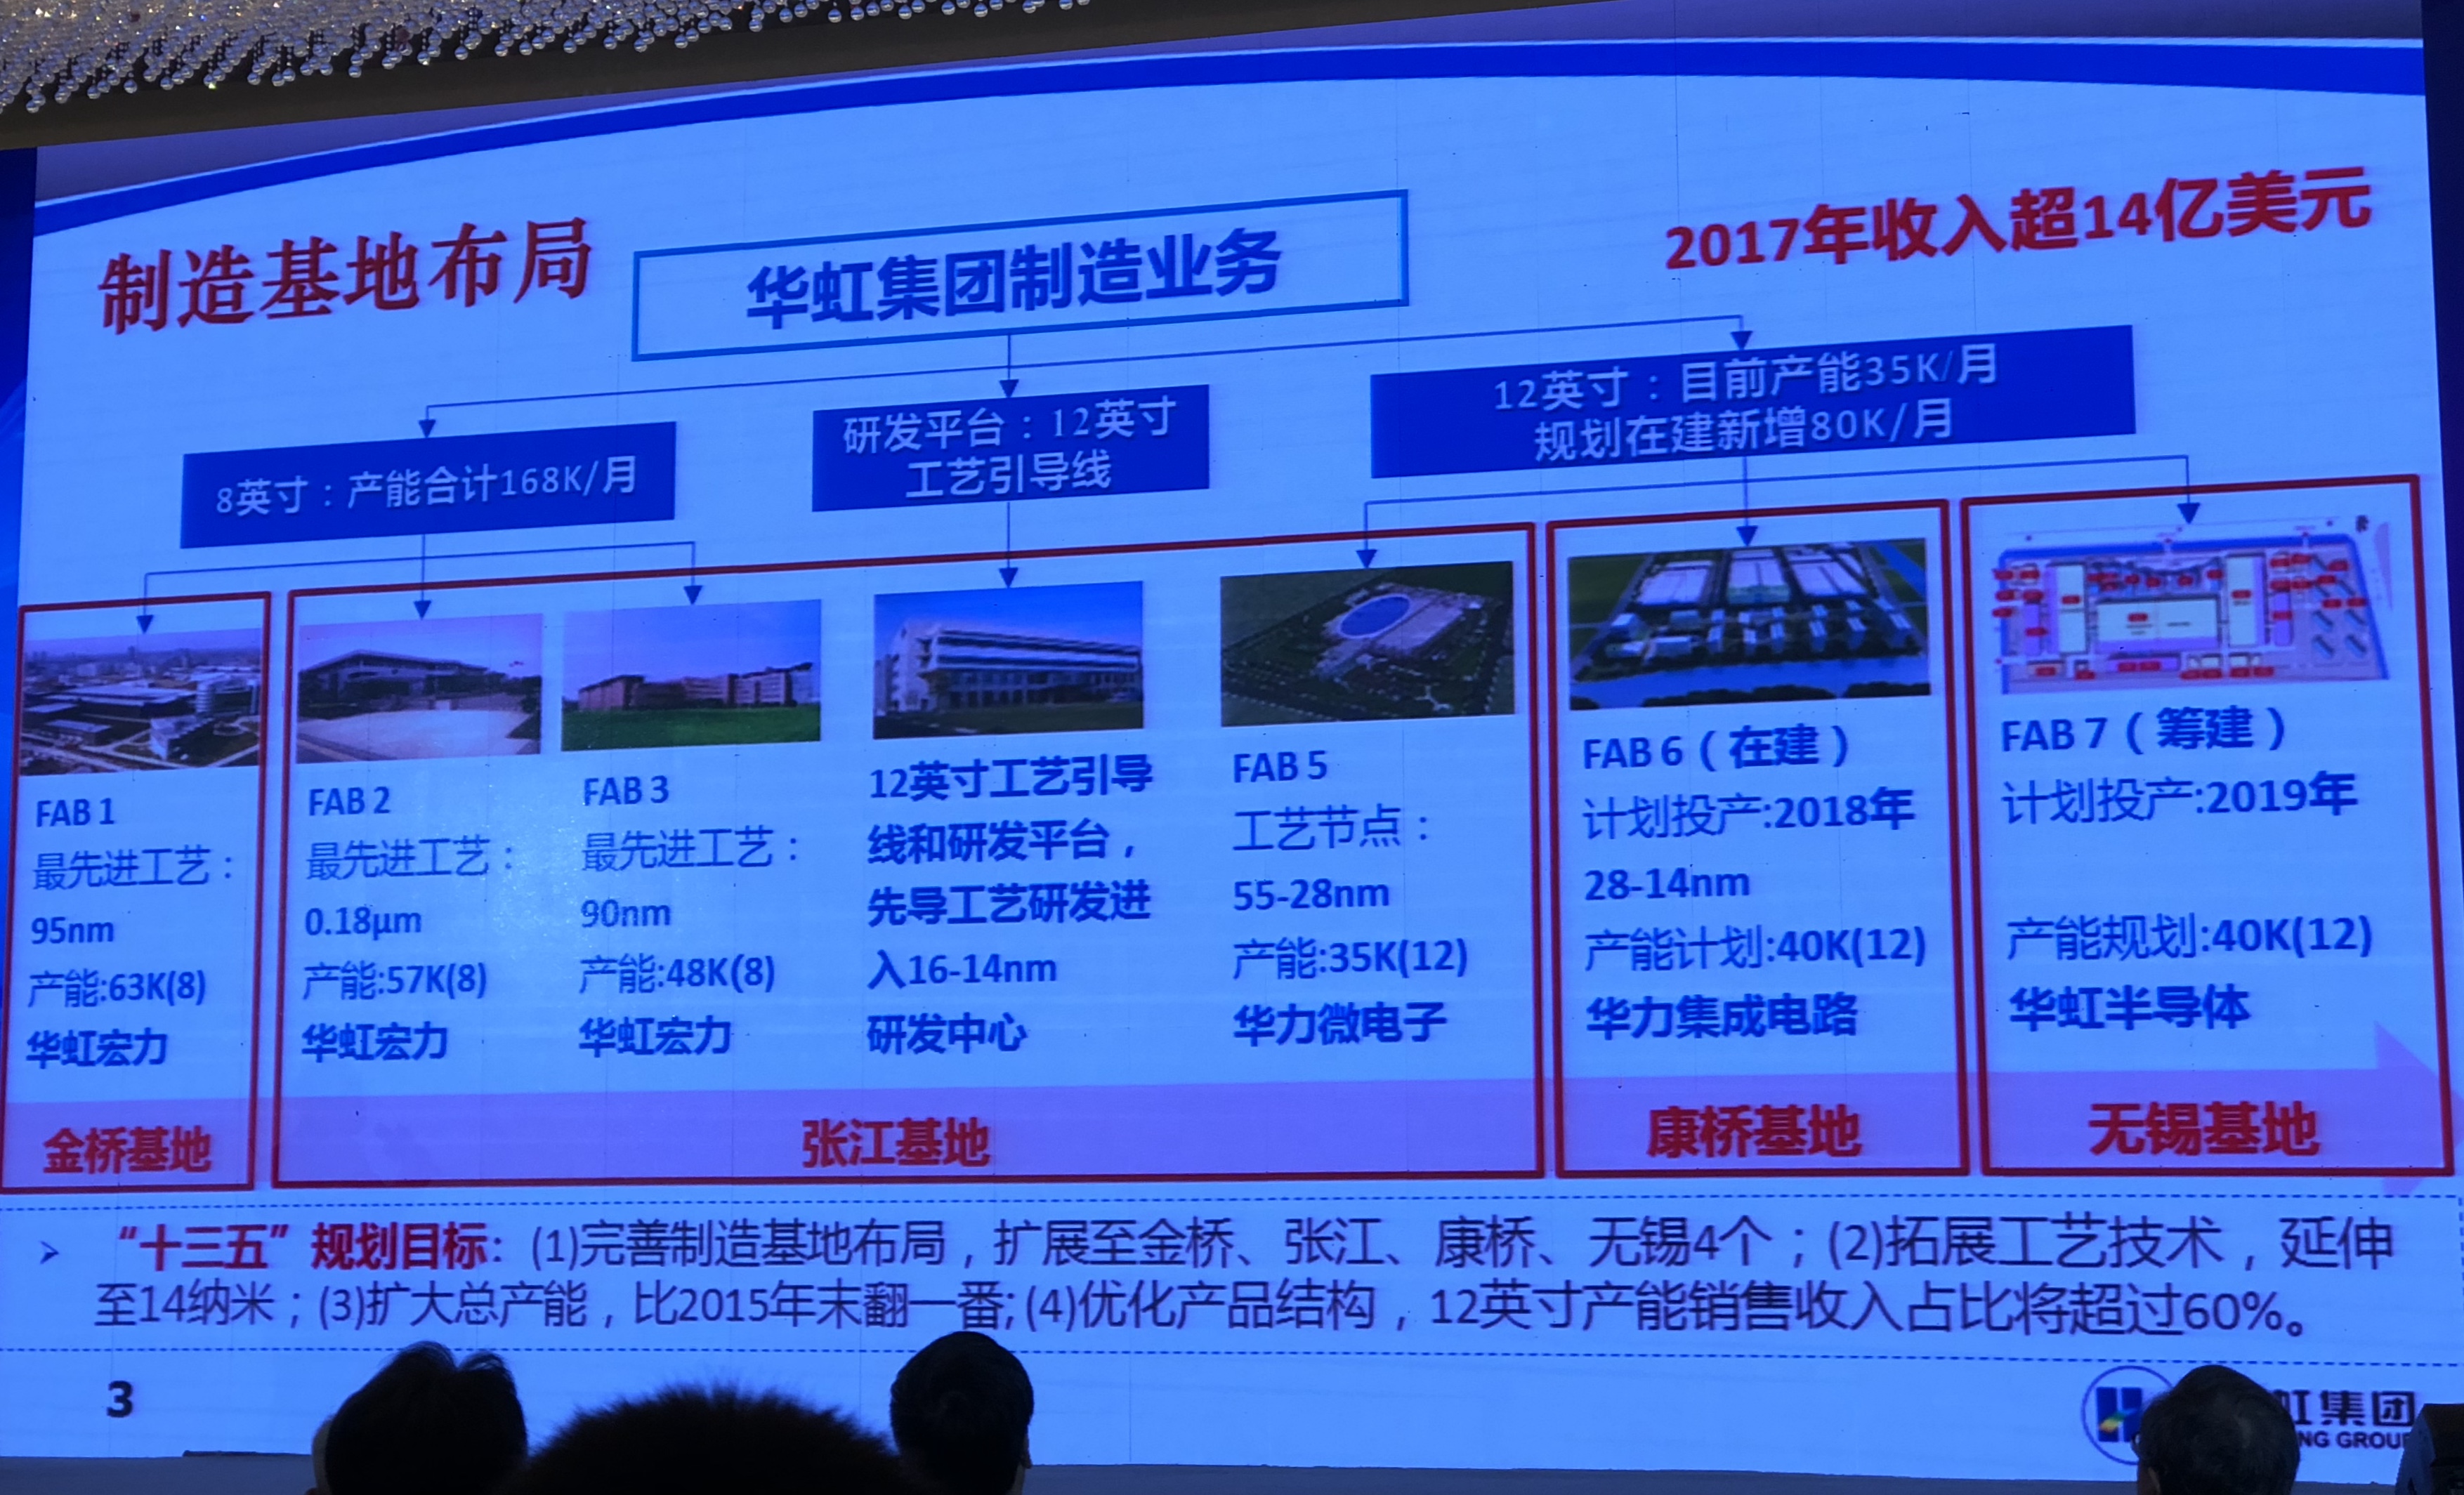 合肥长鑫年底生产8Gb DDR4工程样品,明年底产能2万片/月